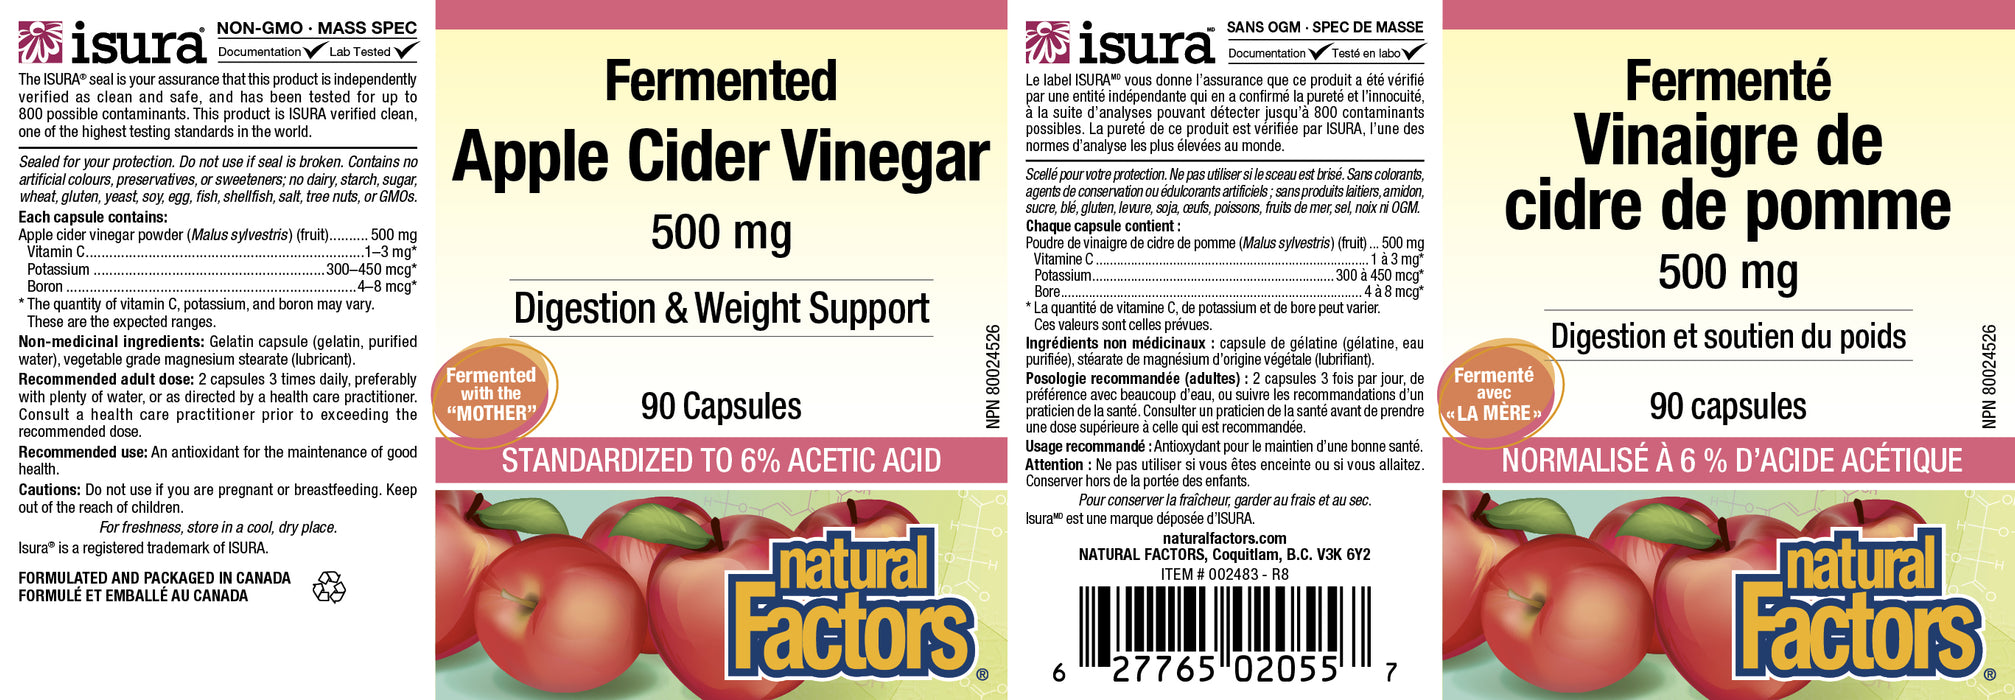 Natural Factors Fermented Apple Cider Vinegar 500 mg 90 Capsules